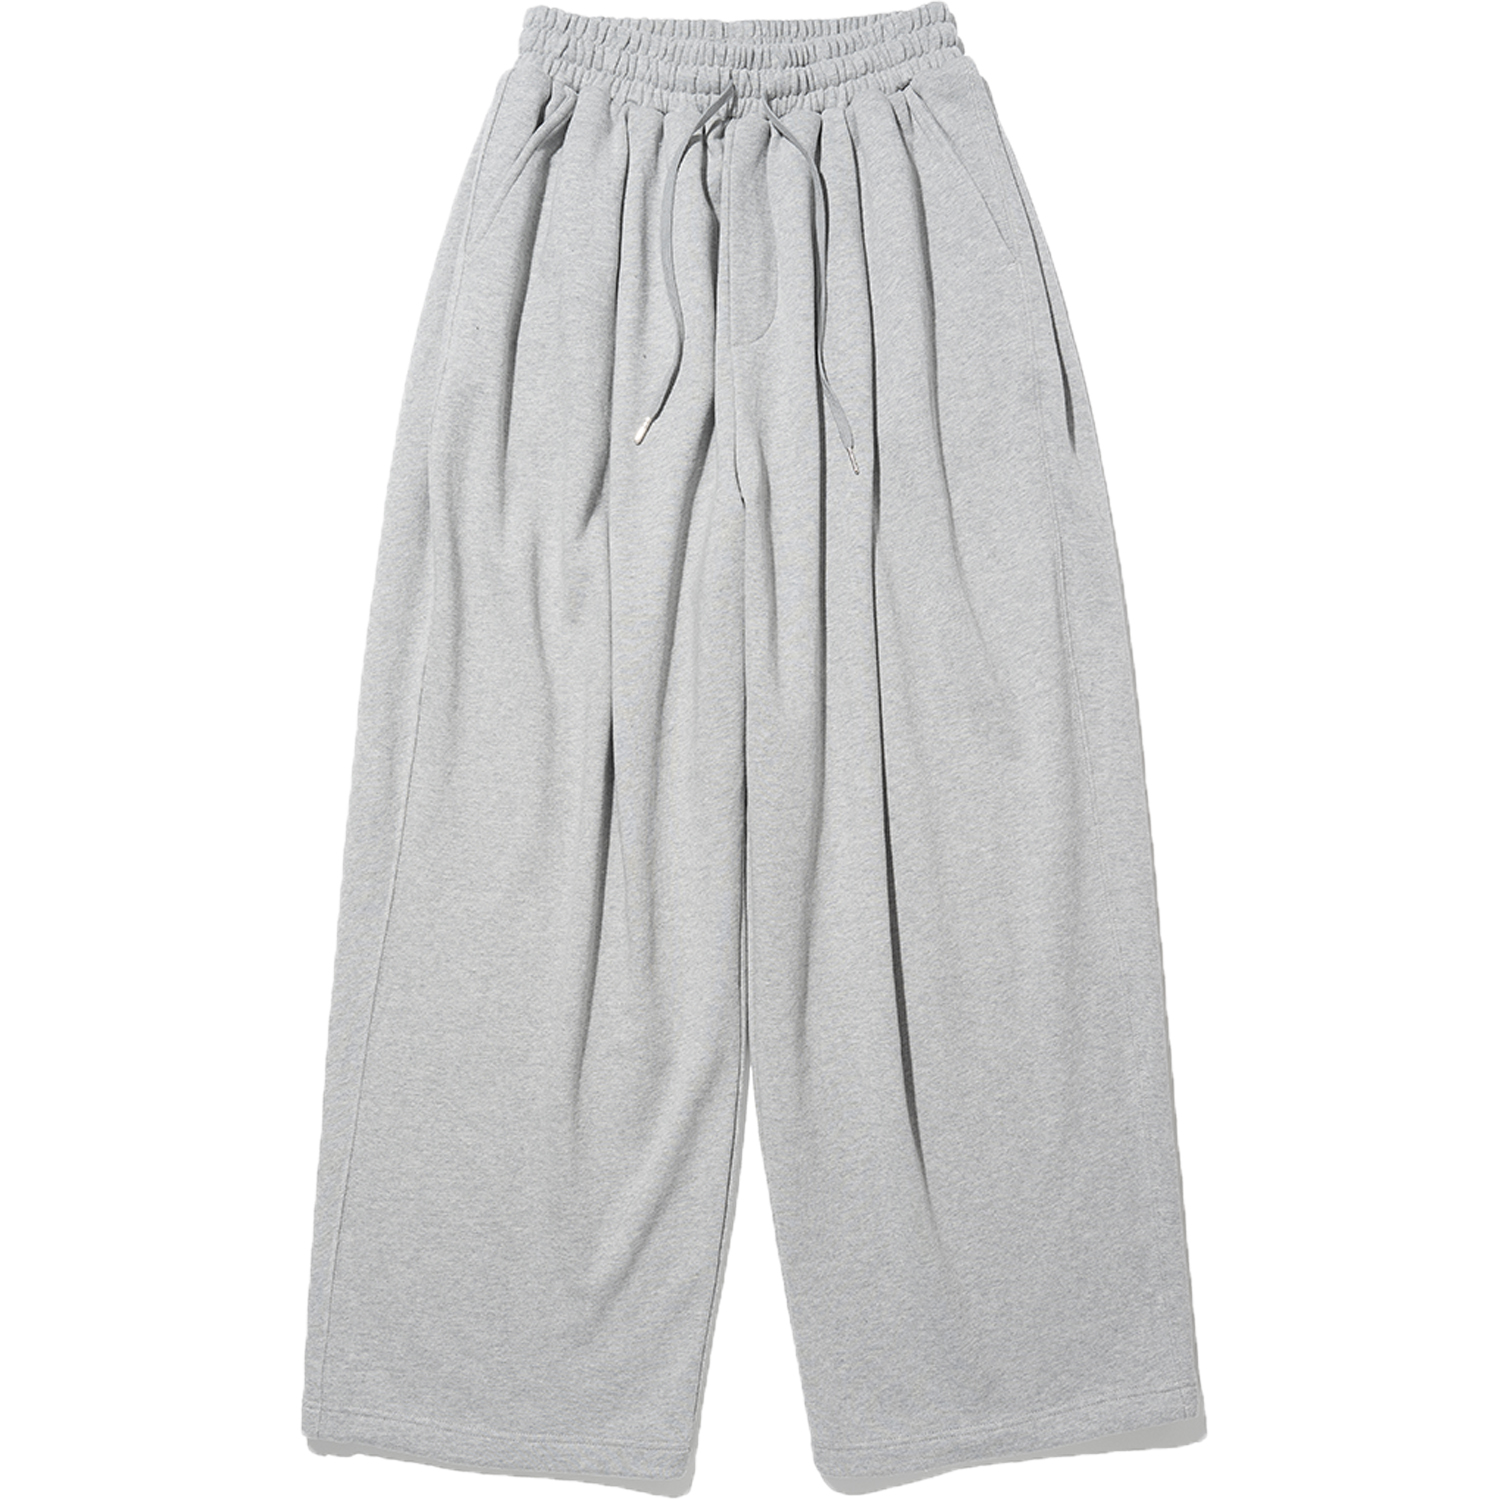 3Tuck Wide Sweat Pants - Grey,NOT4NERD